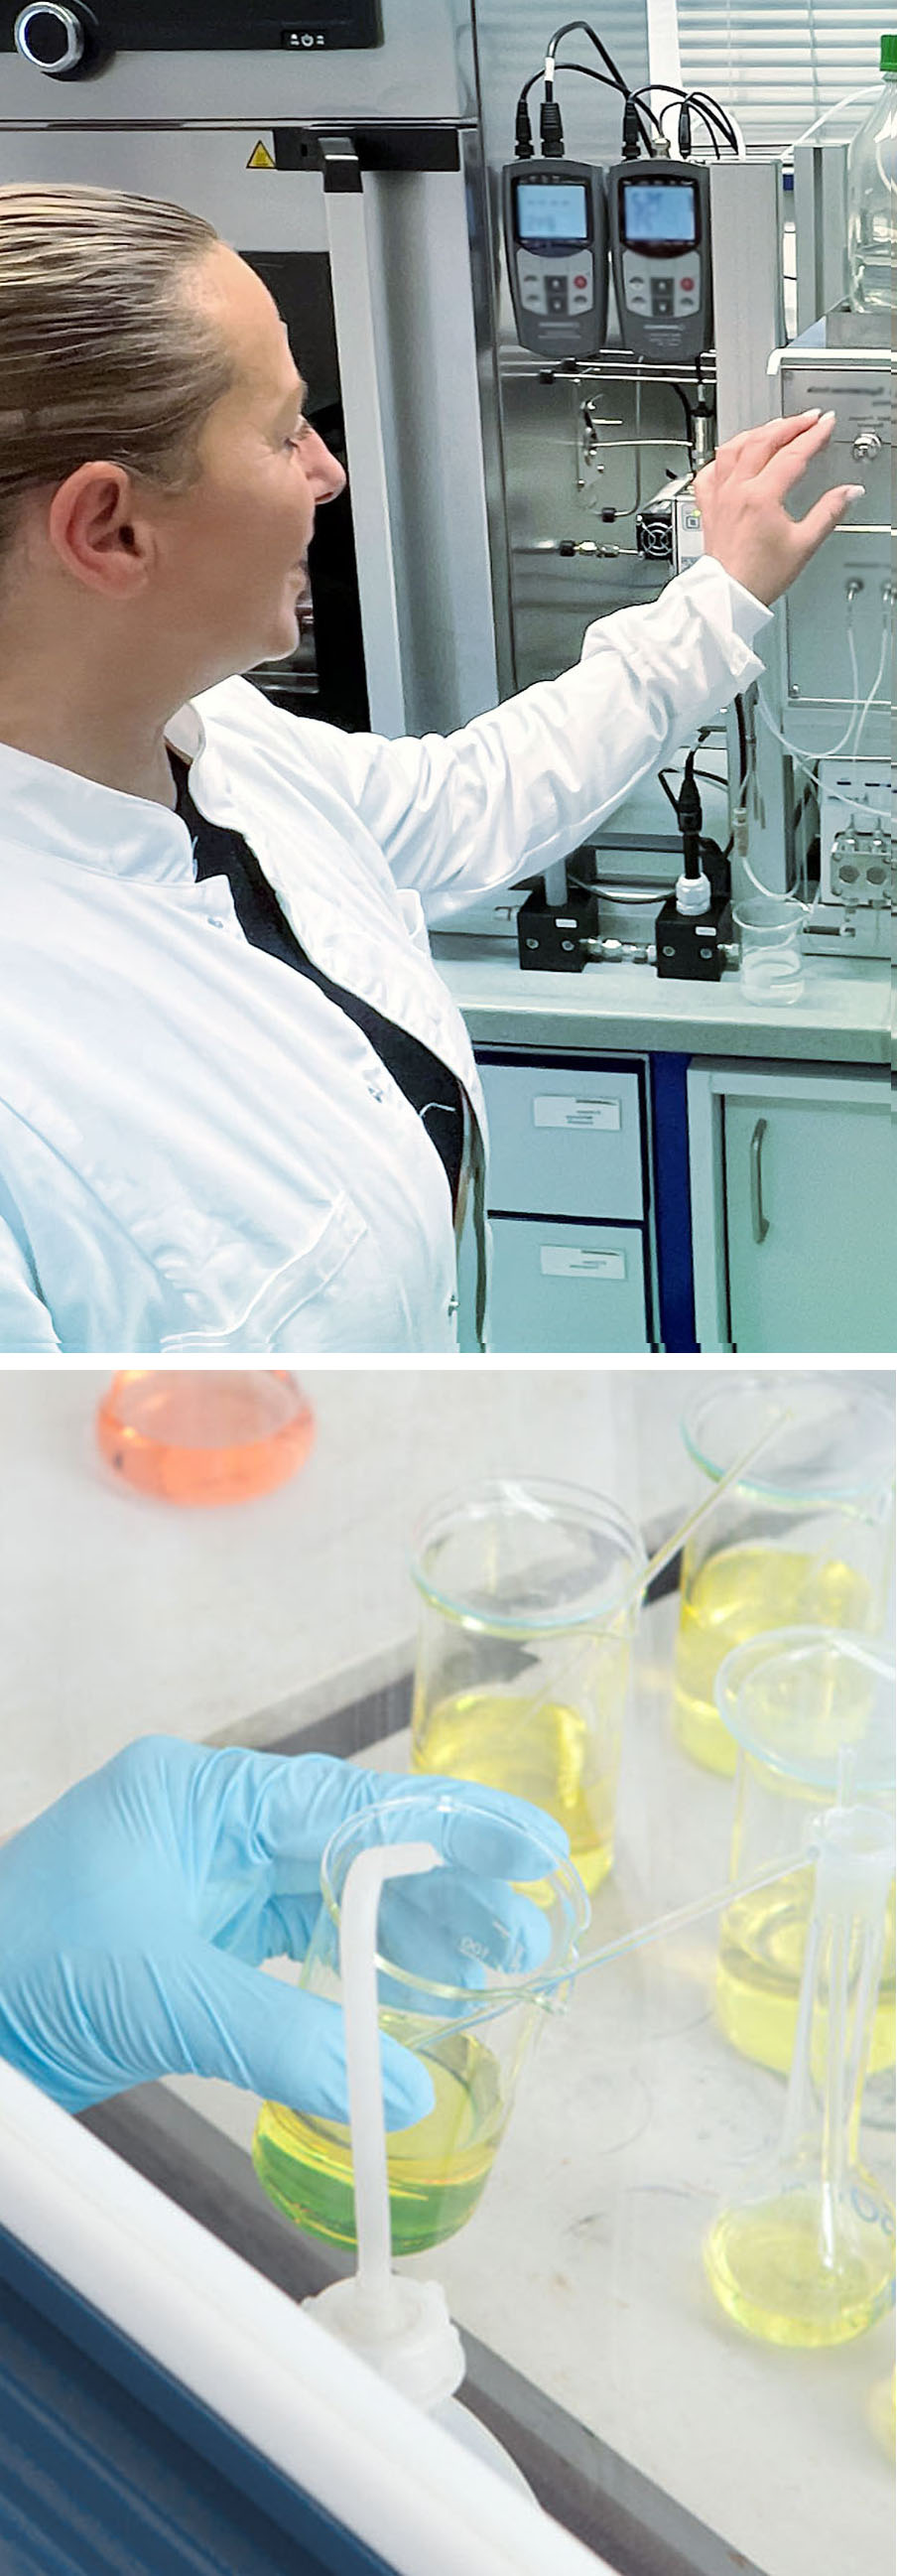 Frau im weißen Kittel bedient Gerät im Labor und Bechergläser mit gelber Flüssigkeit